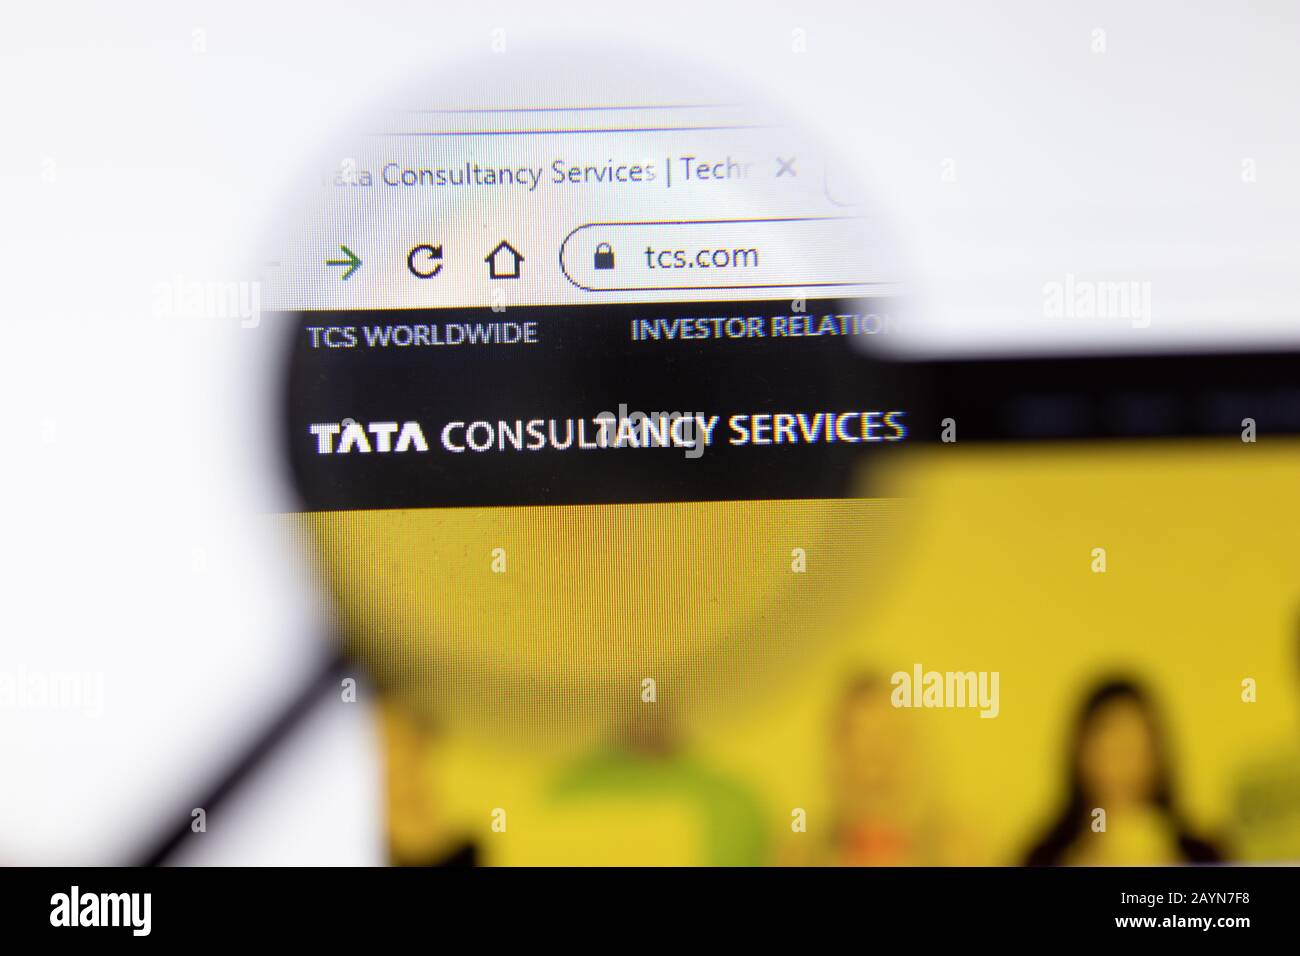 Petersburg, Russland - 18. Februar 2020: Logo auf der Webseite des Unternehmens TCS Tata Consultancy Services auf der Laptop-Anzeige. Bildschirm mit Symbol, Illustration Stockfoto